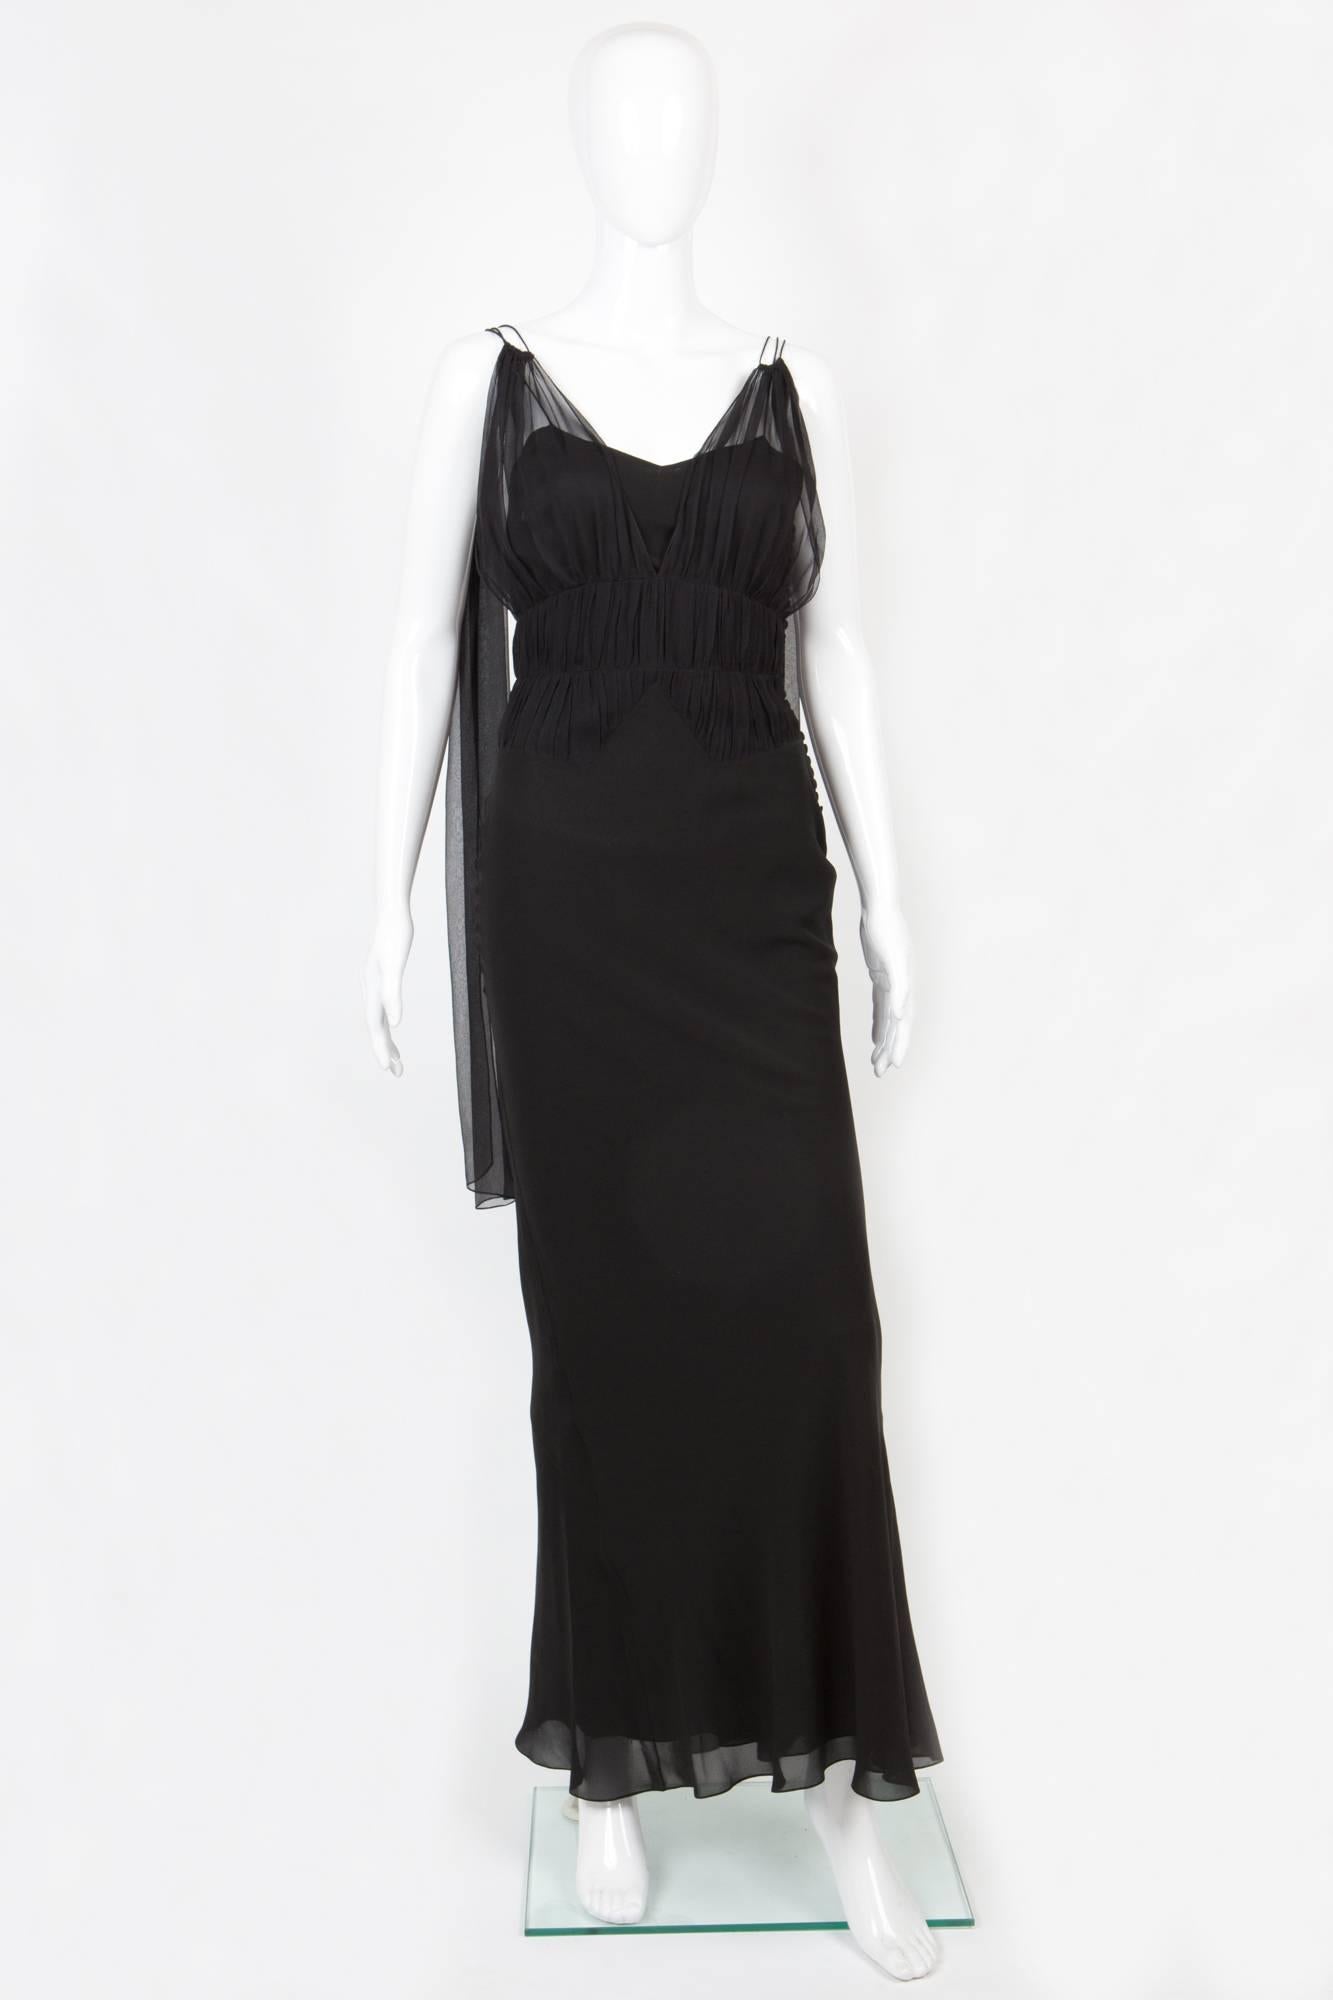 Women's Christian Dior Black Evening Dress